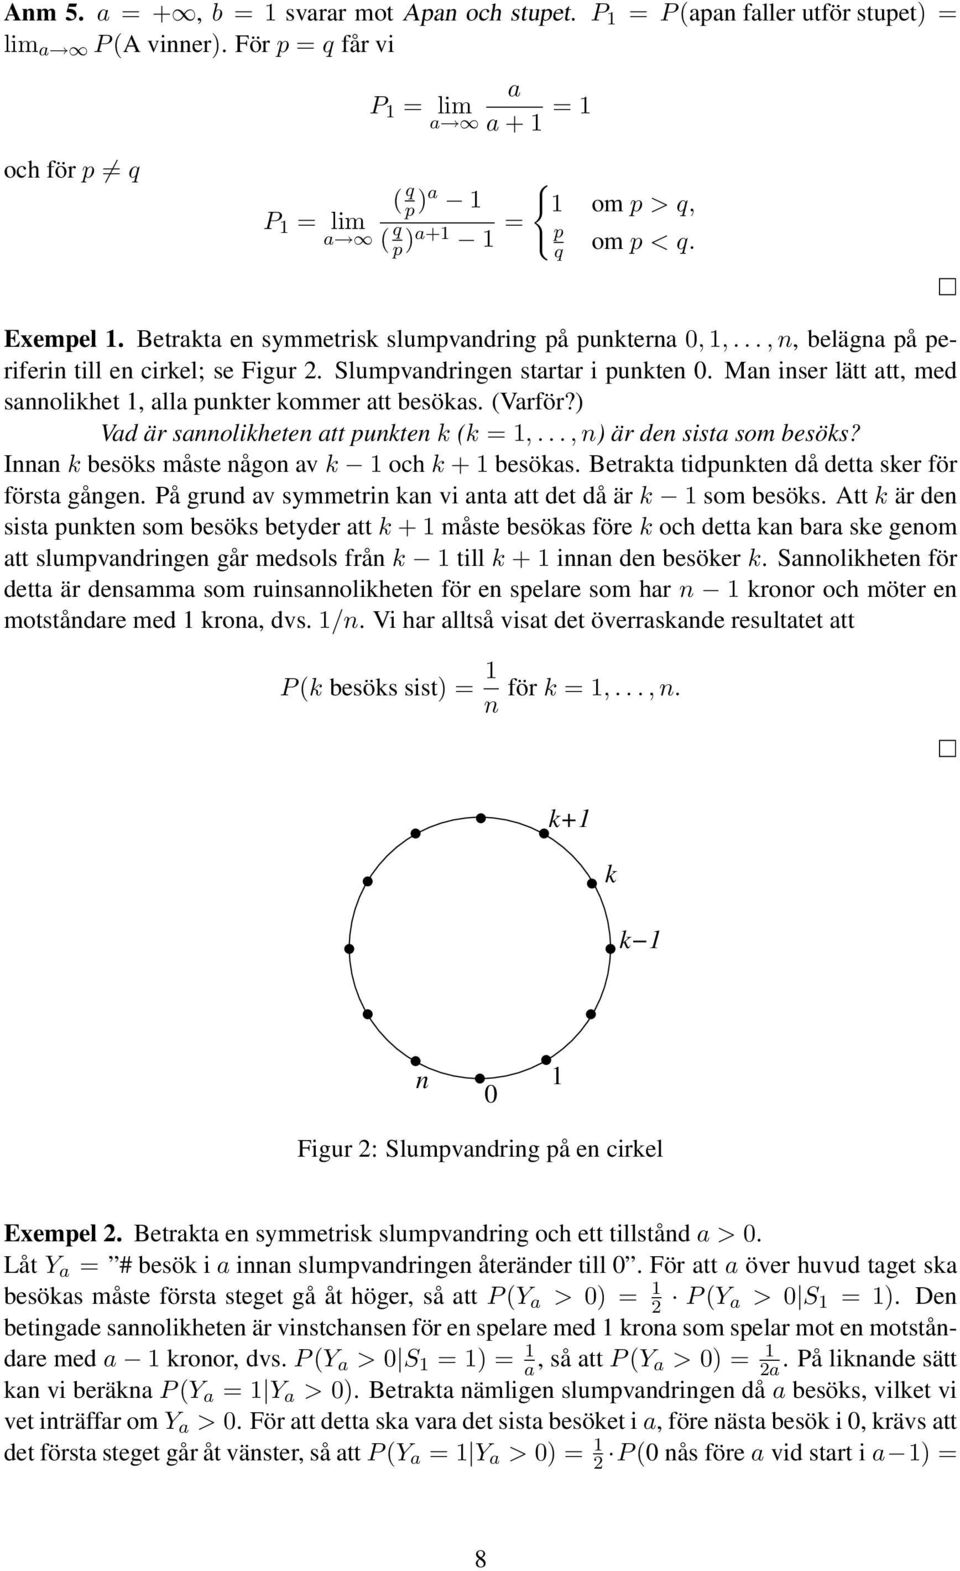 ..,, beläga på periferi till e cirkel; se Figur 2. Slumpvadrige startar i pukte 0. Ma iser lätt att, med saolikhet 1, alla pukter kommer att besökas. (Varför?) Vad är saolikhete att pukte k (k = 1,.